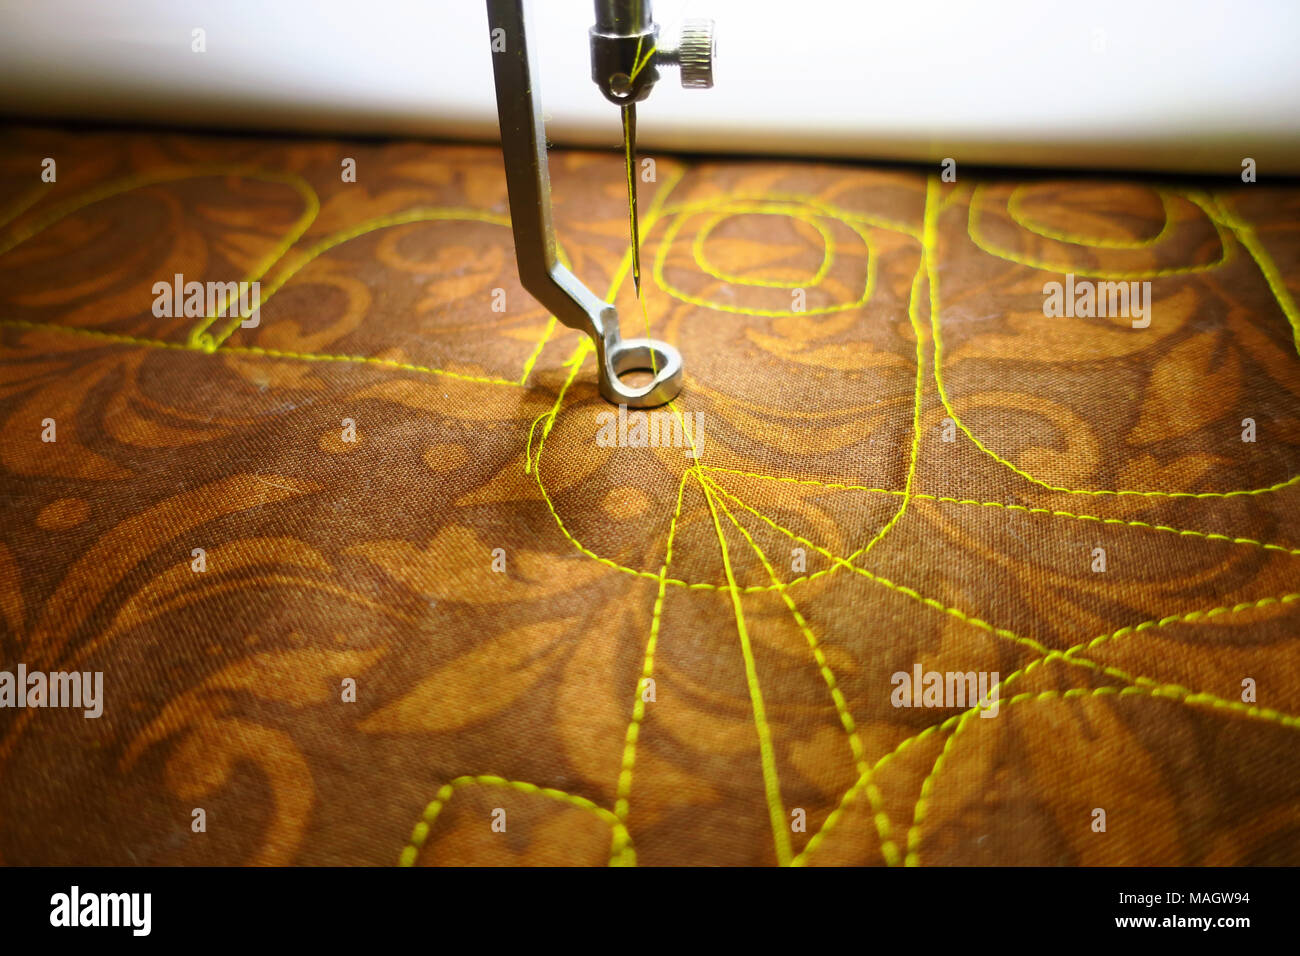 Eine Stickmaschine Nähfaden in ein Muster Stockfotografie - Alamy